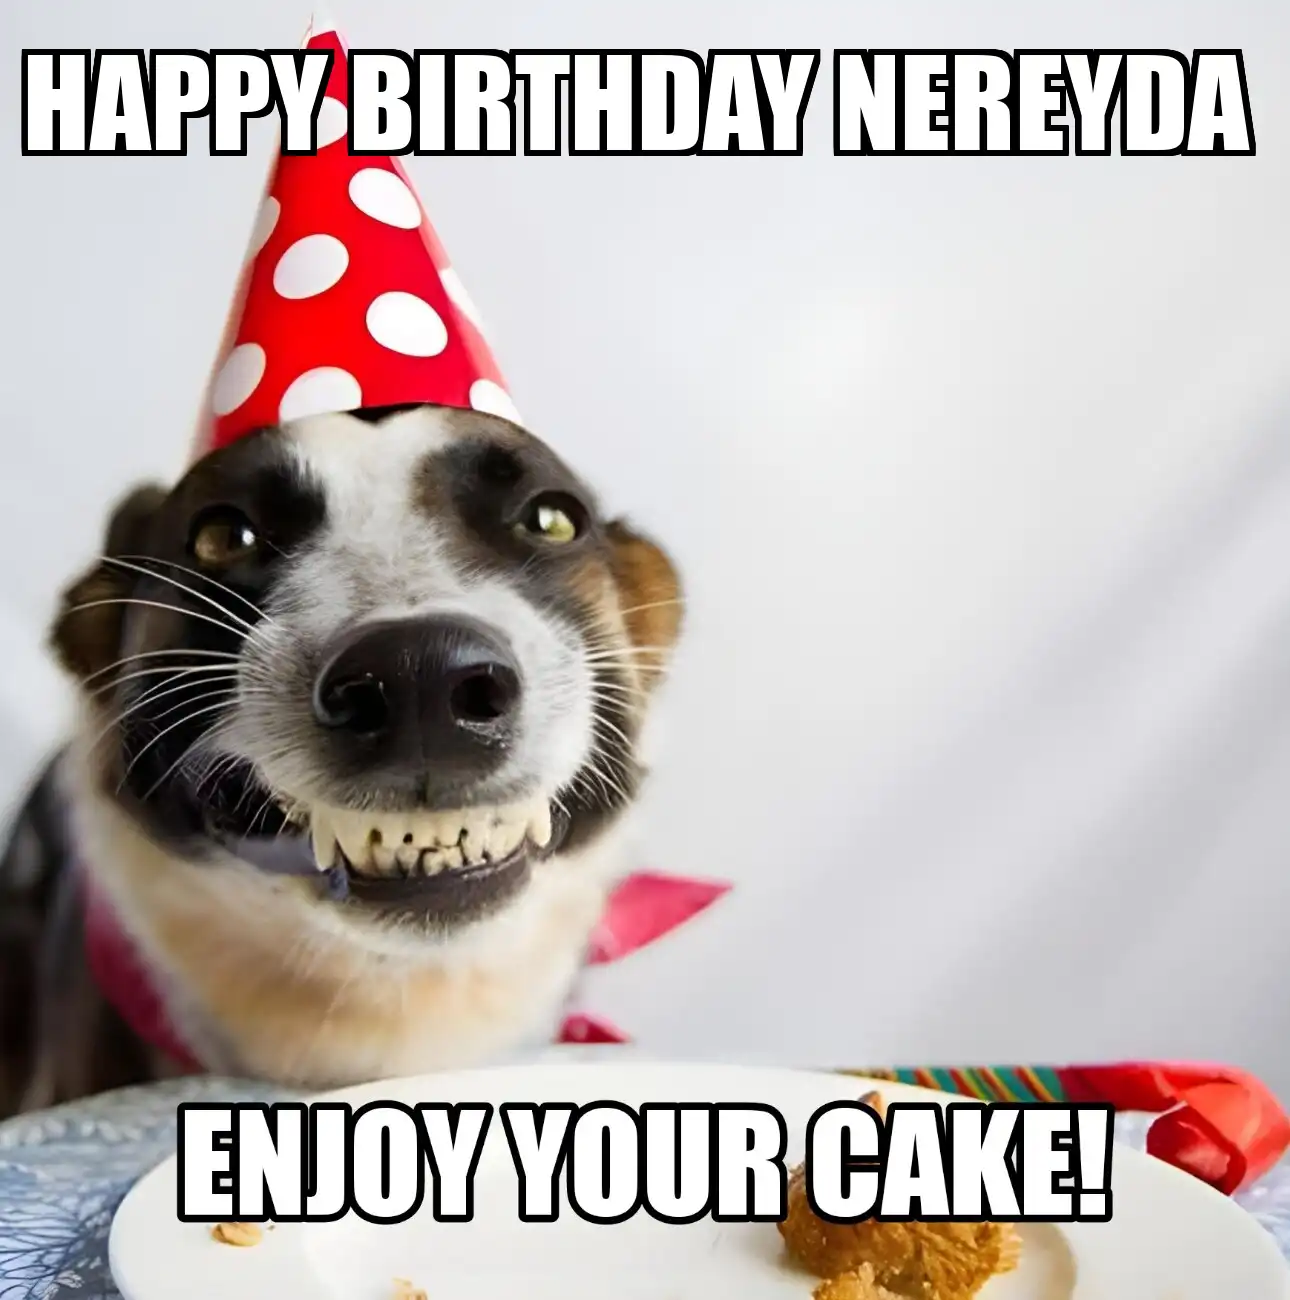 Happy Birthday Nereyda Enjoy Your Cake Dog Meme